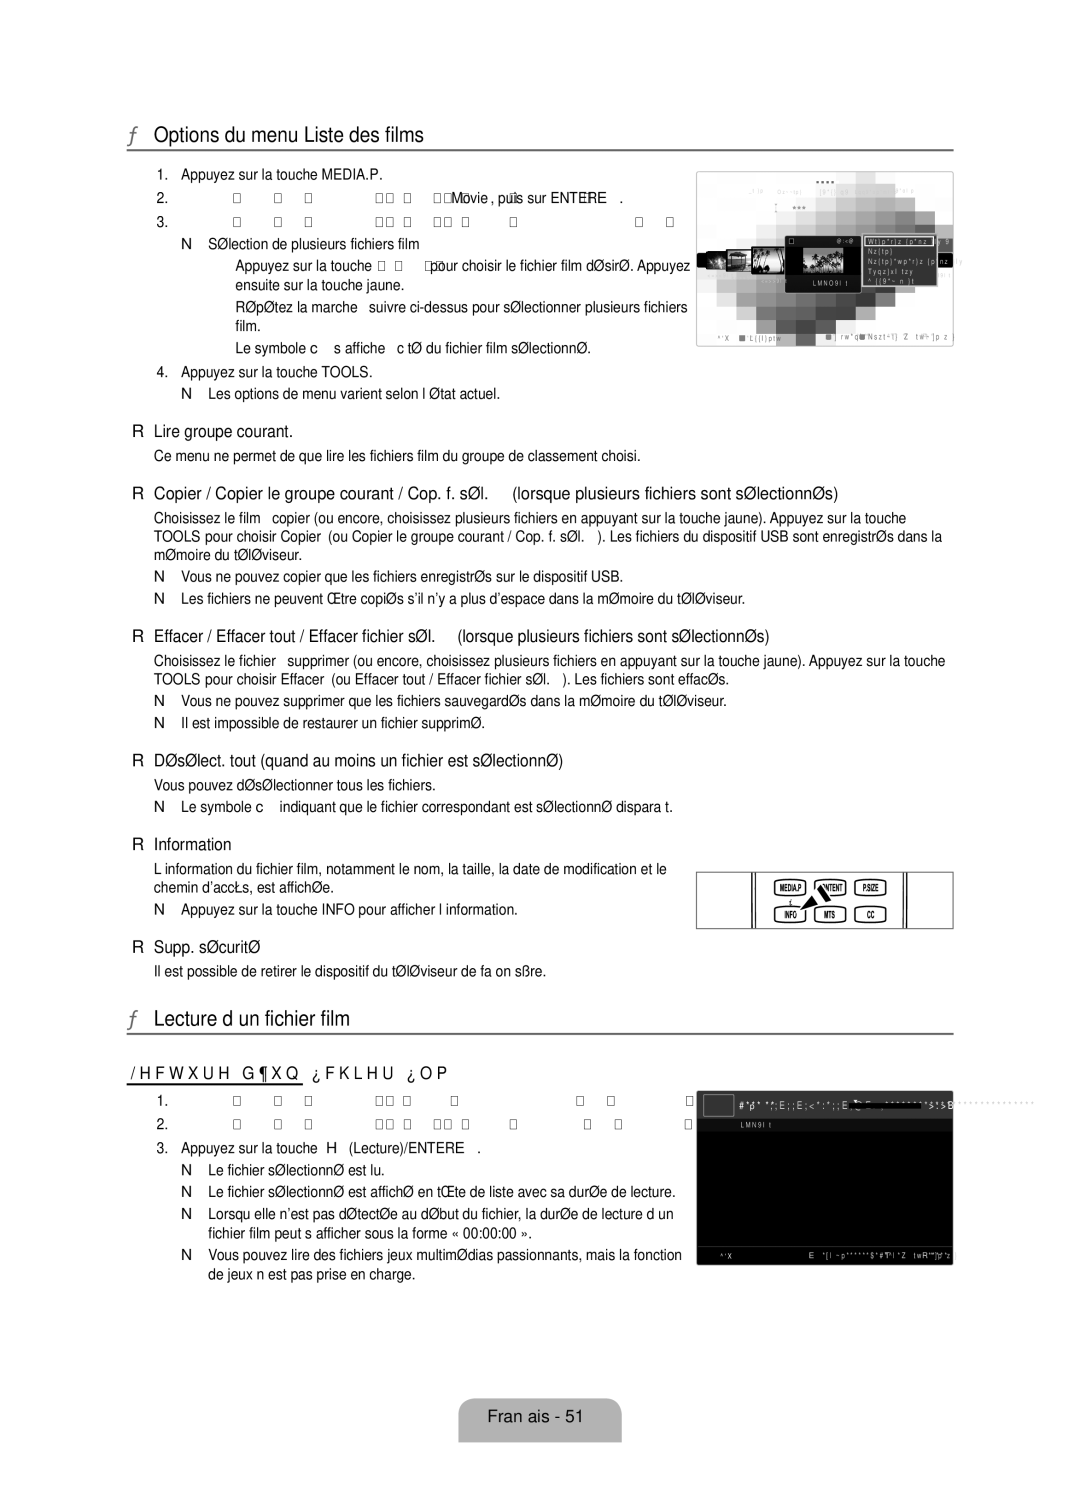 Samsung LN6B60 user manual Options du menu Liste des films, Lecture d’un fichier film 